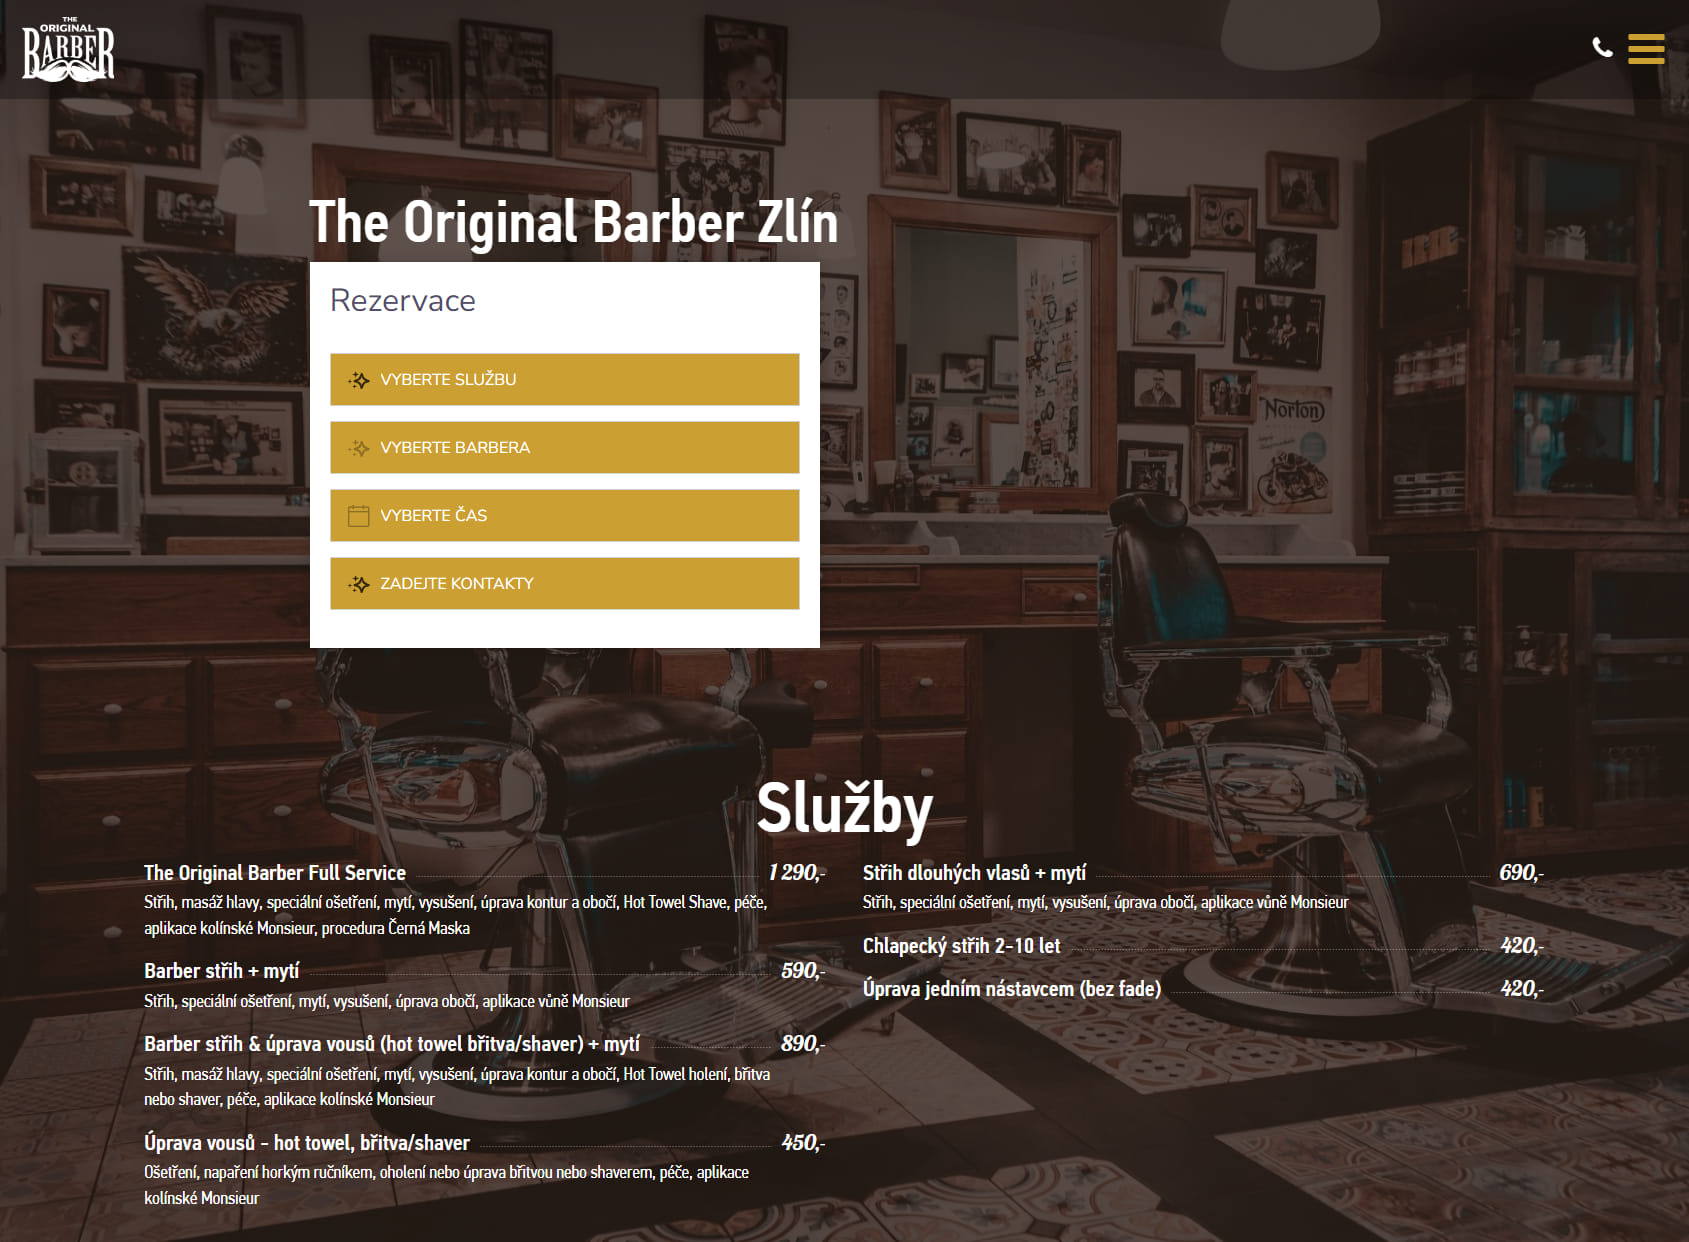 The Original Barber Shop - Zlín